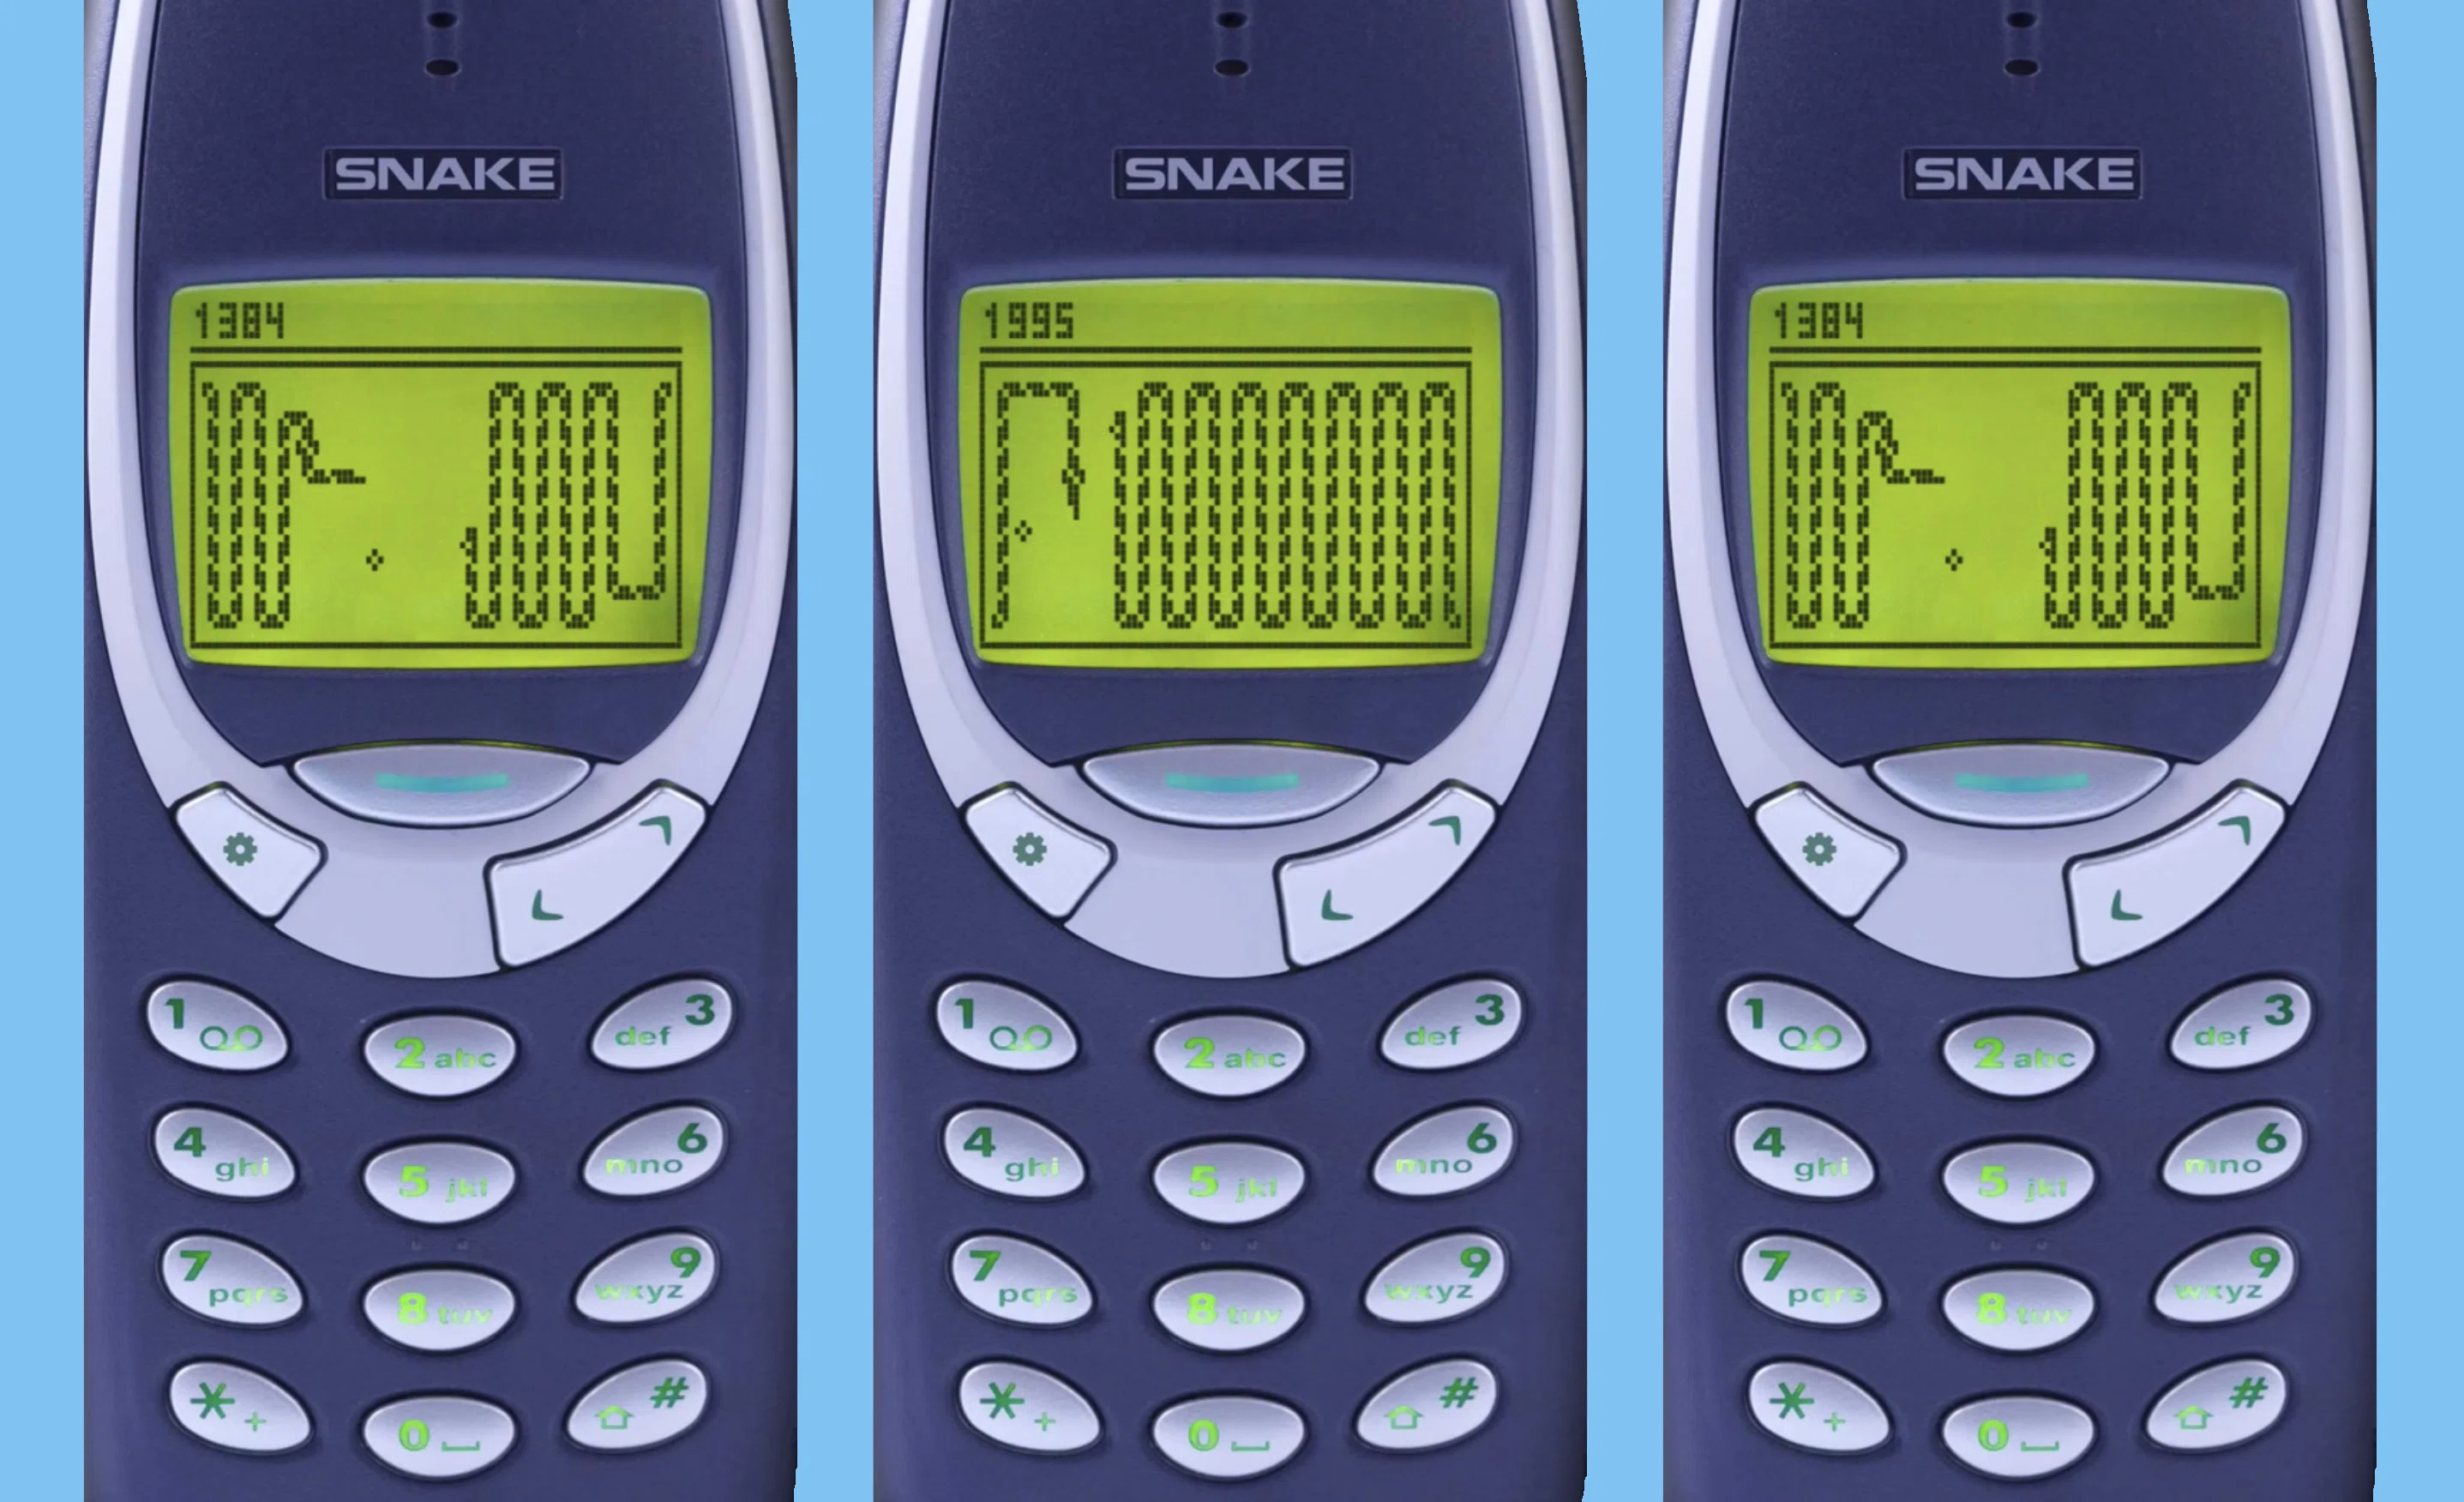 Snake on the Nokia